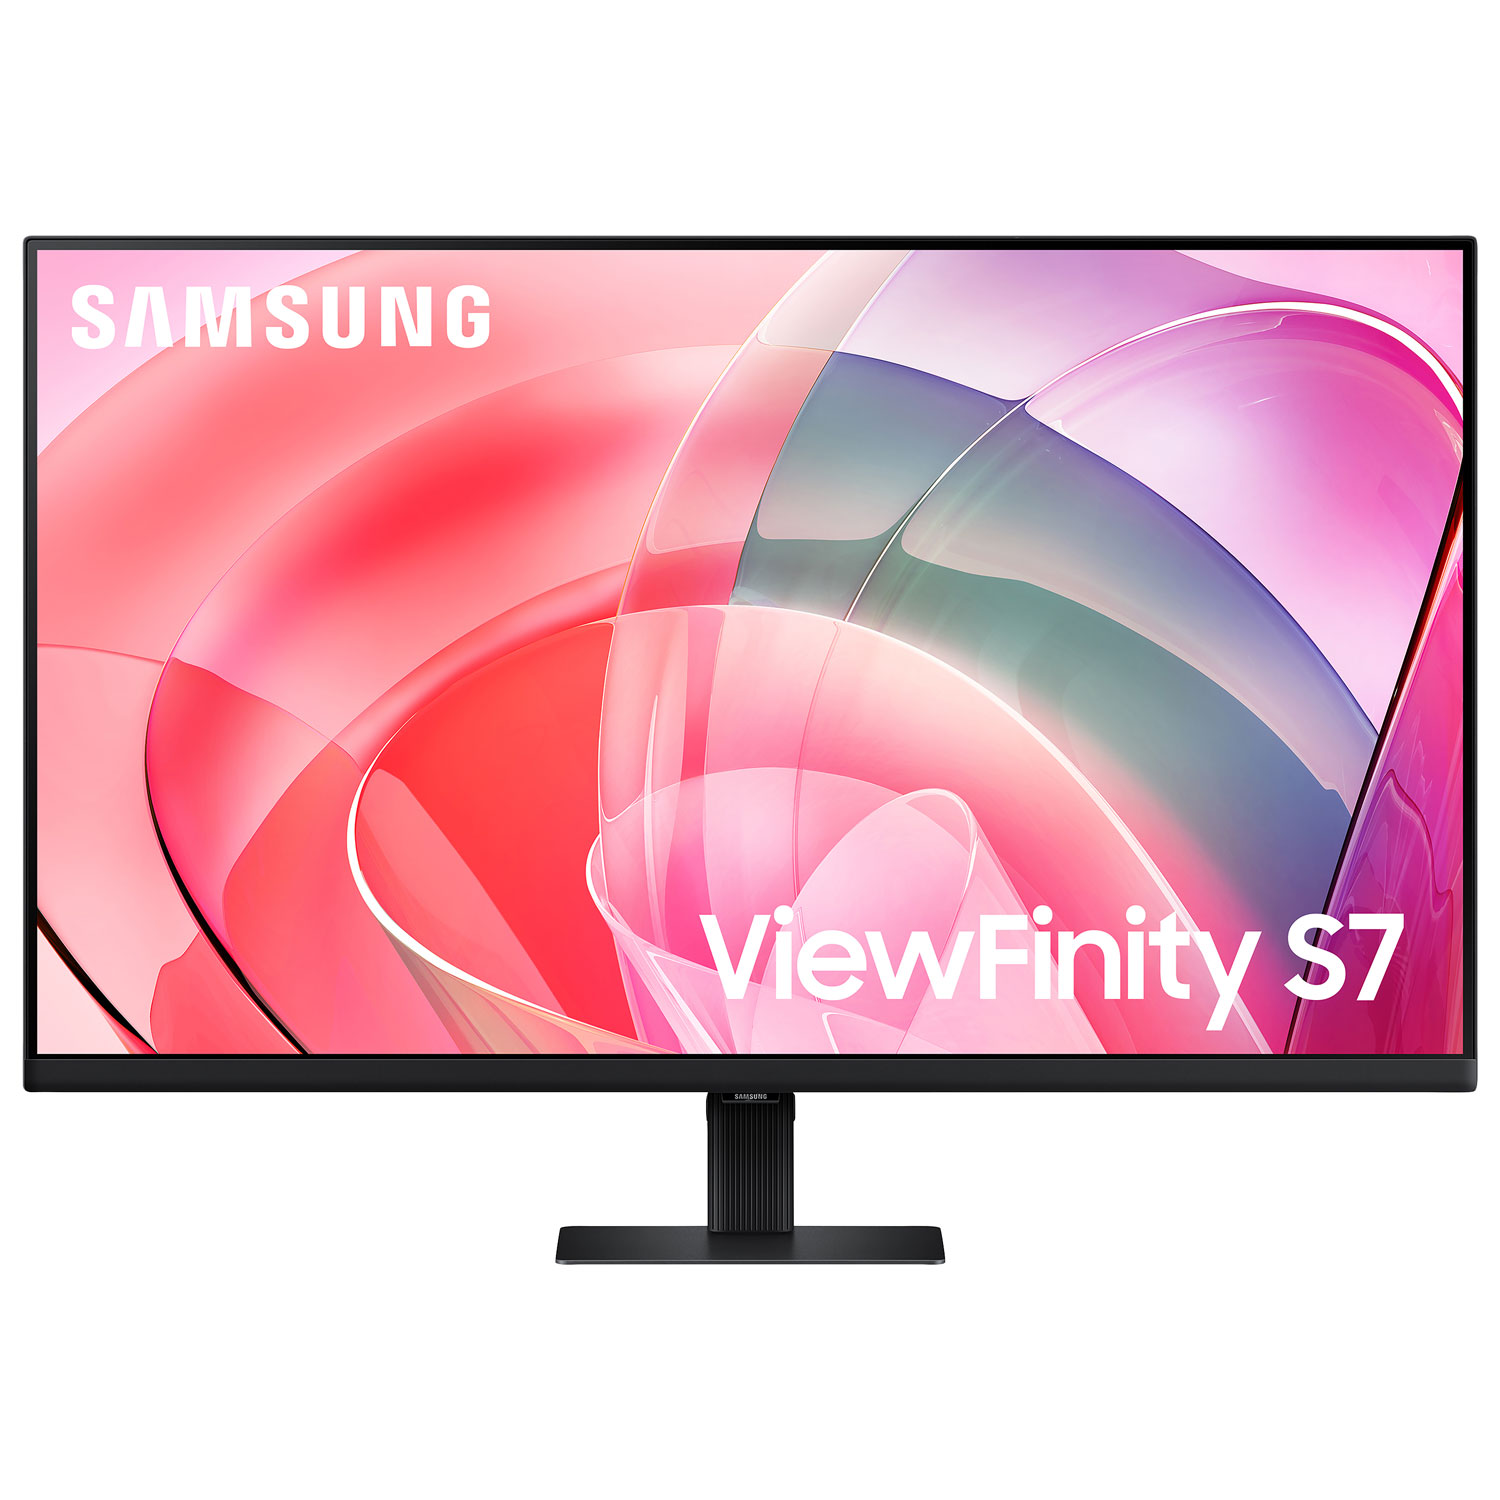 Samsung 32" 4K Ultra HD 60Hz 5ms GTG VA LCD Monitor (LS32D702EANXGO) - Black